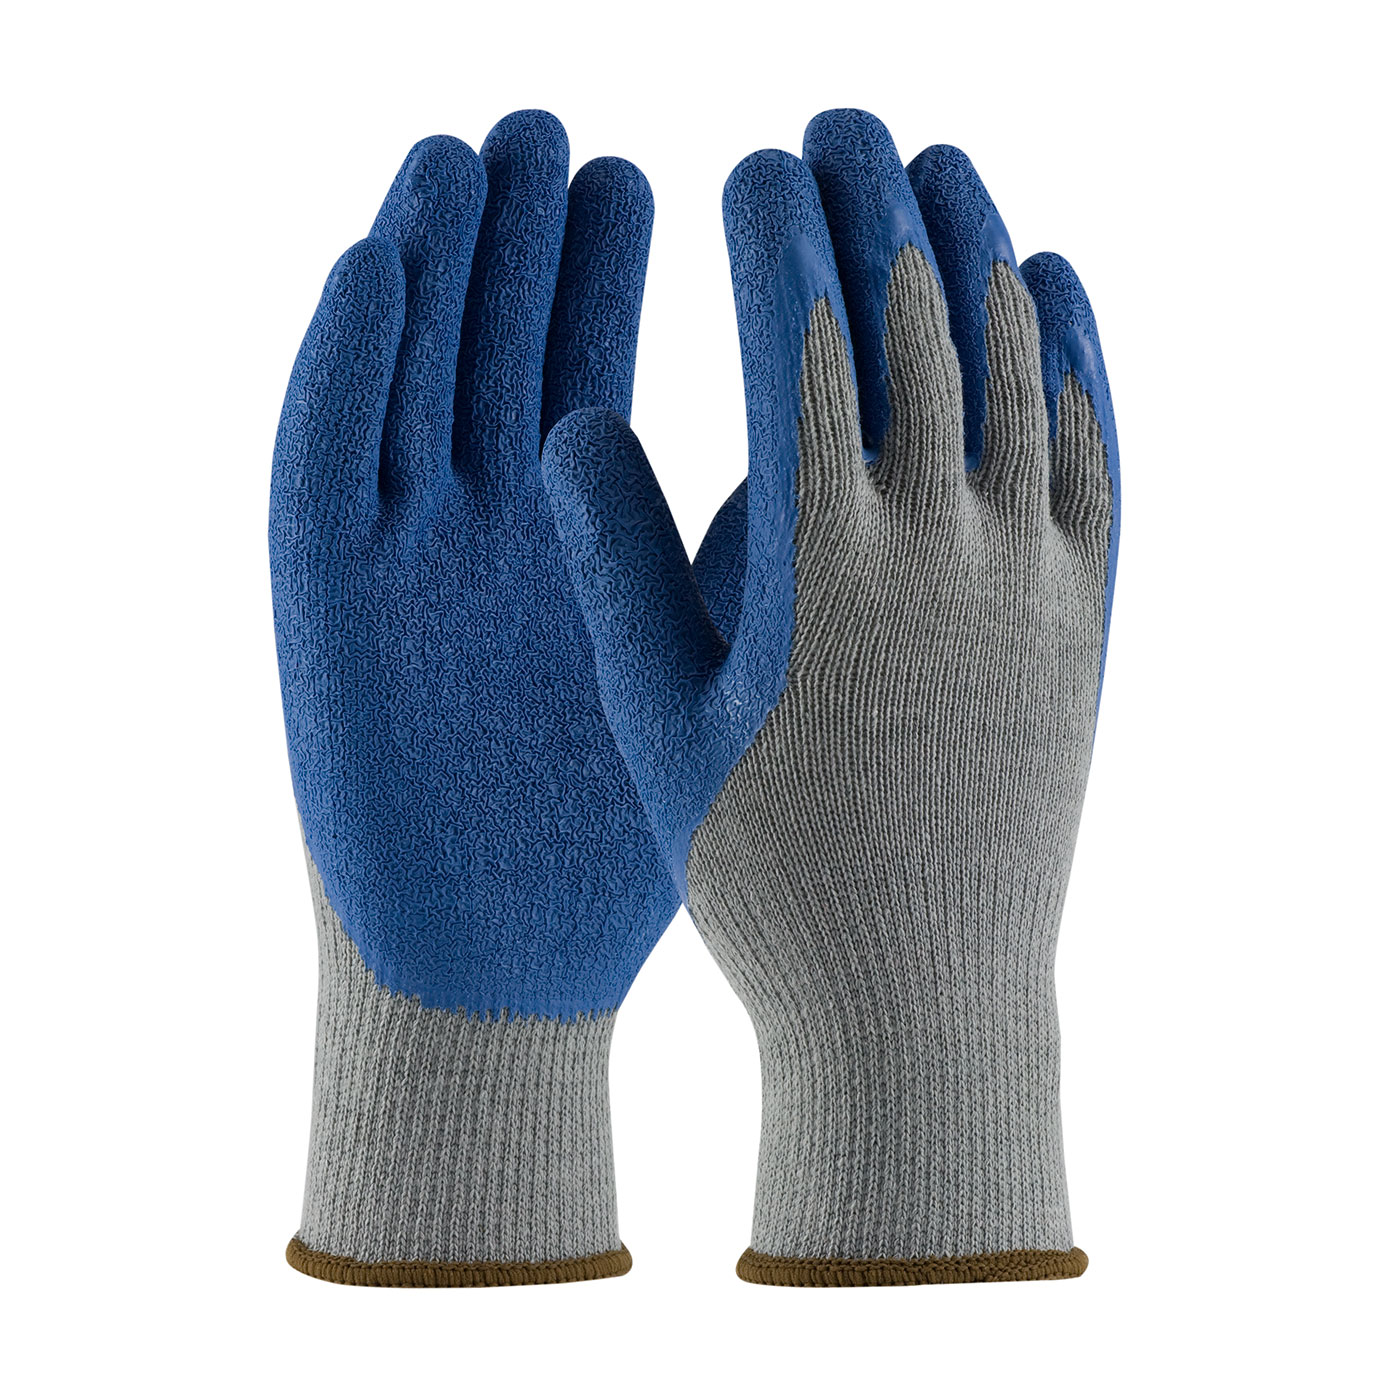 PIP® G-Tek® GP™ Latex Coated Crinkle Grip Glove #39-C1305